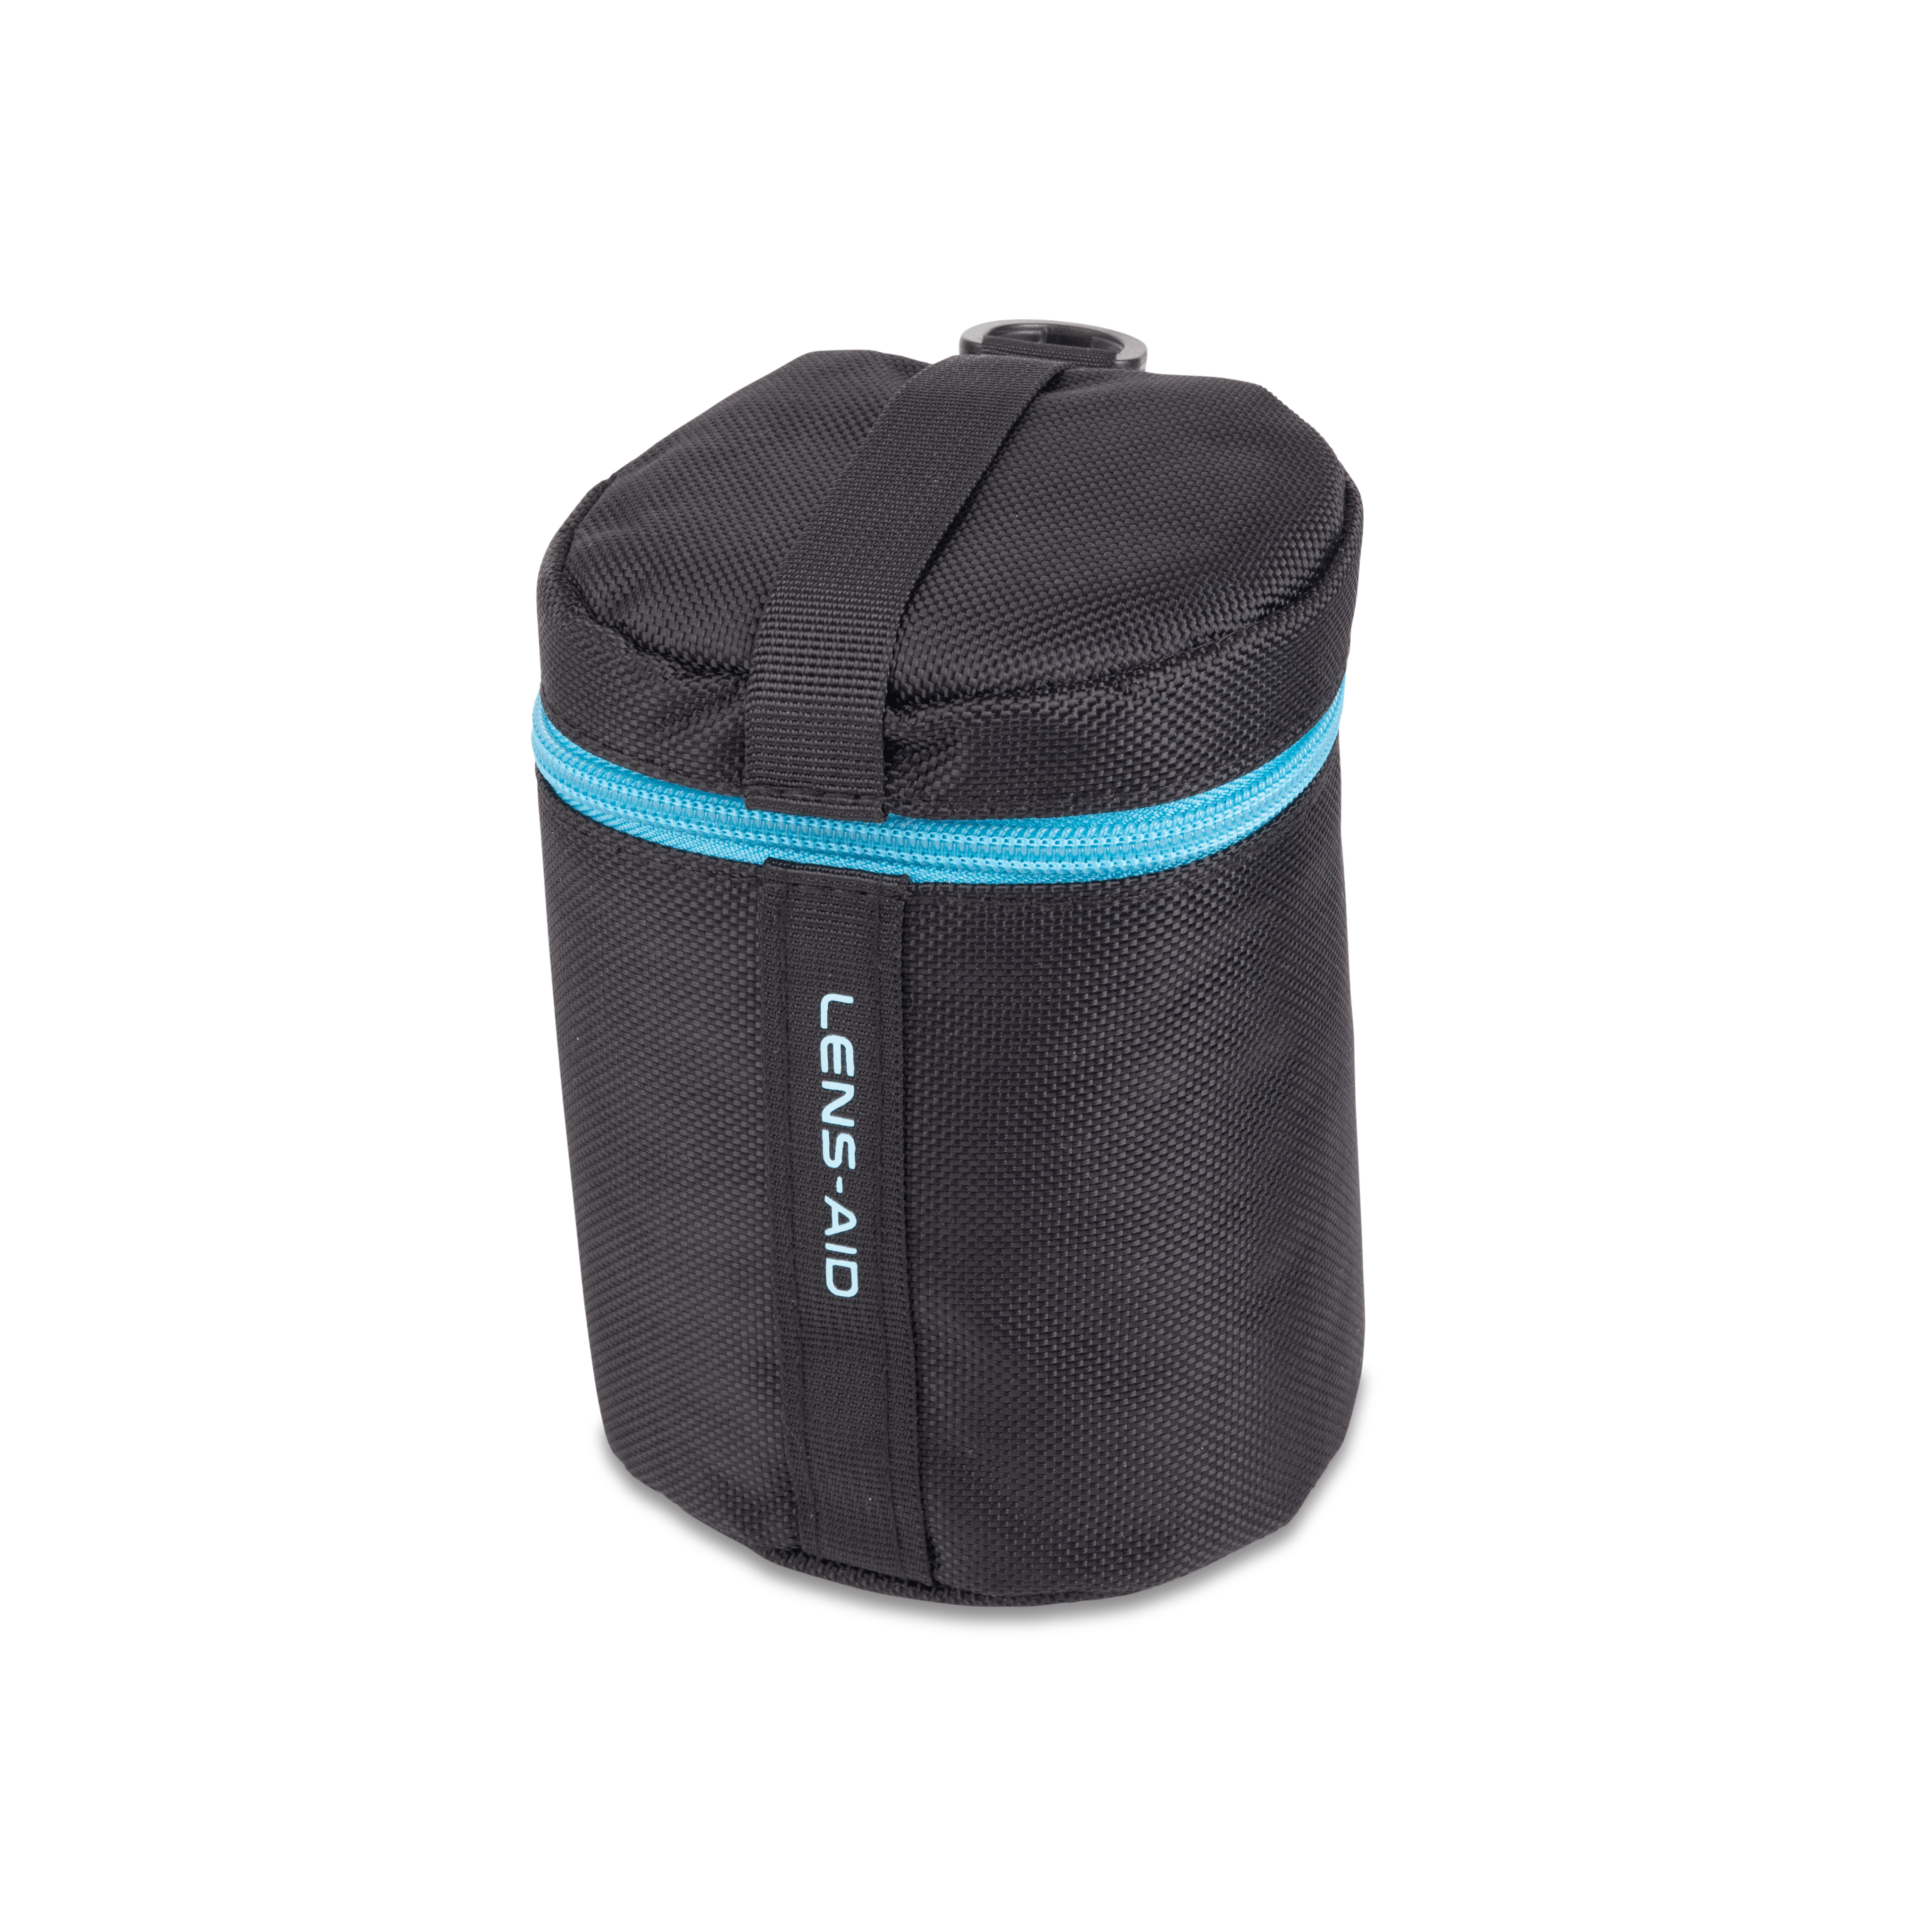 LENS-AID Objektivtasche mit Zipper 14 Tasche, Schwarz/Blau S x cm) (9